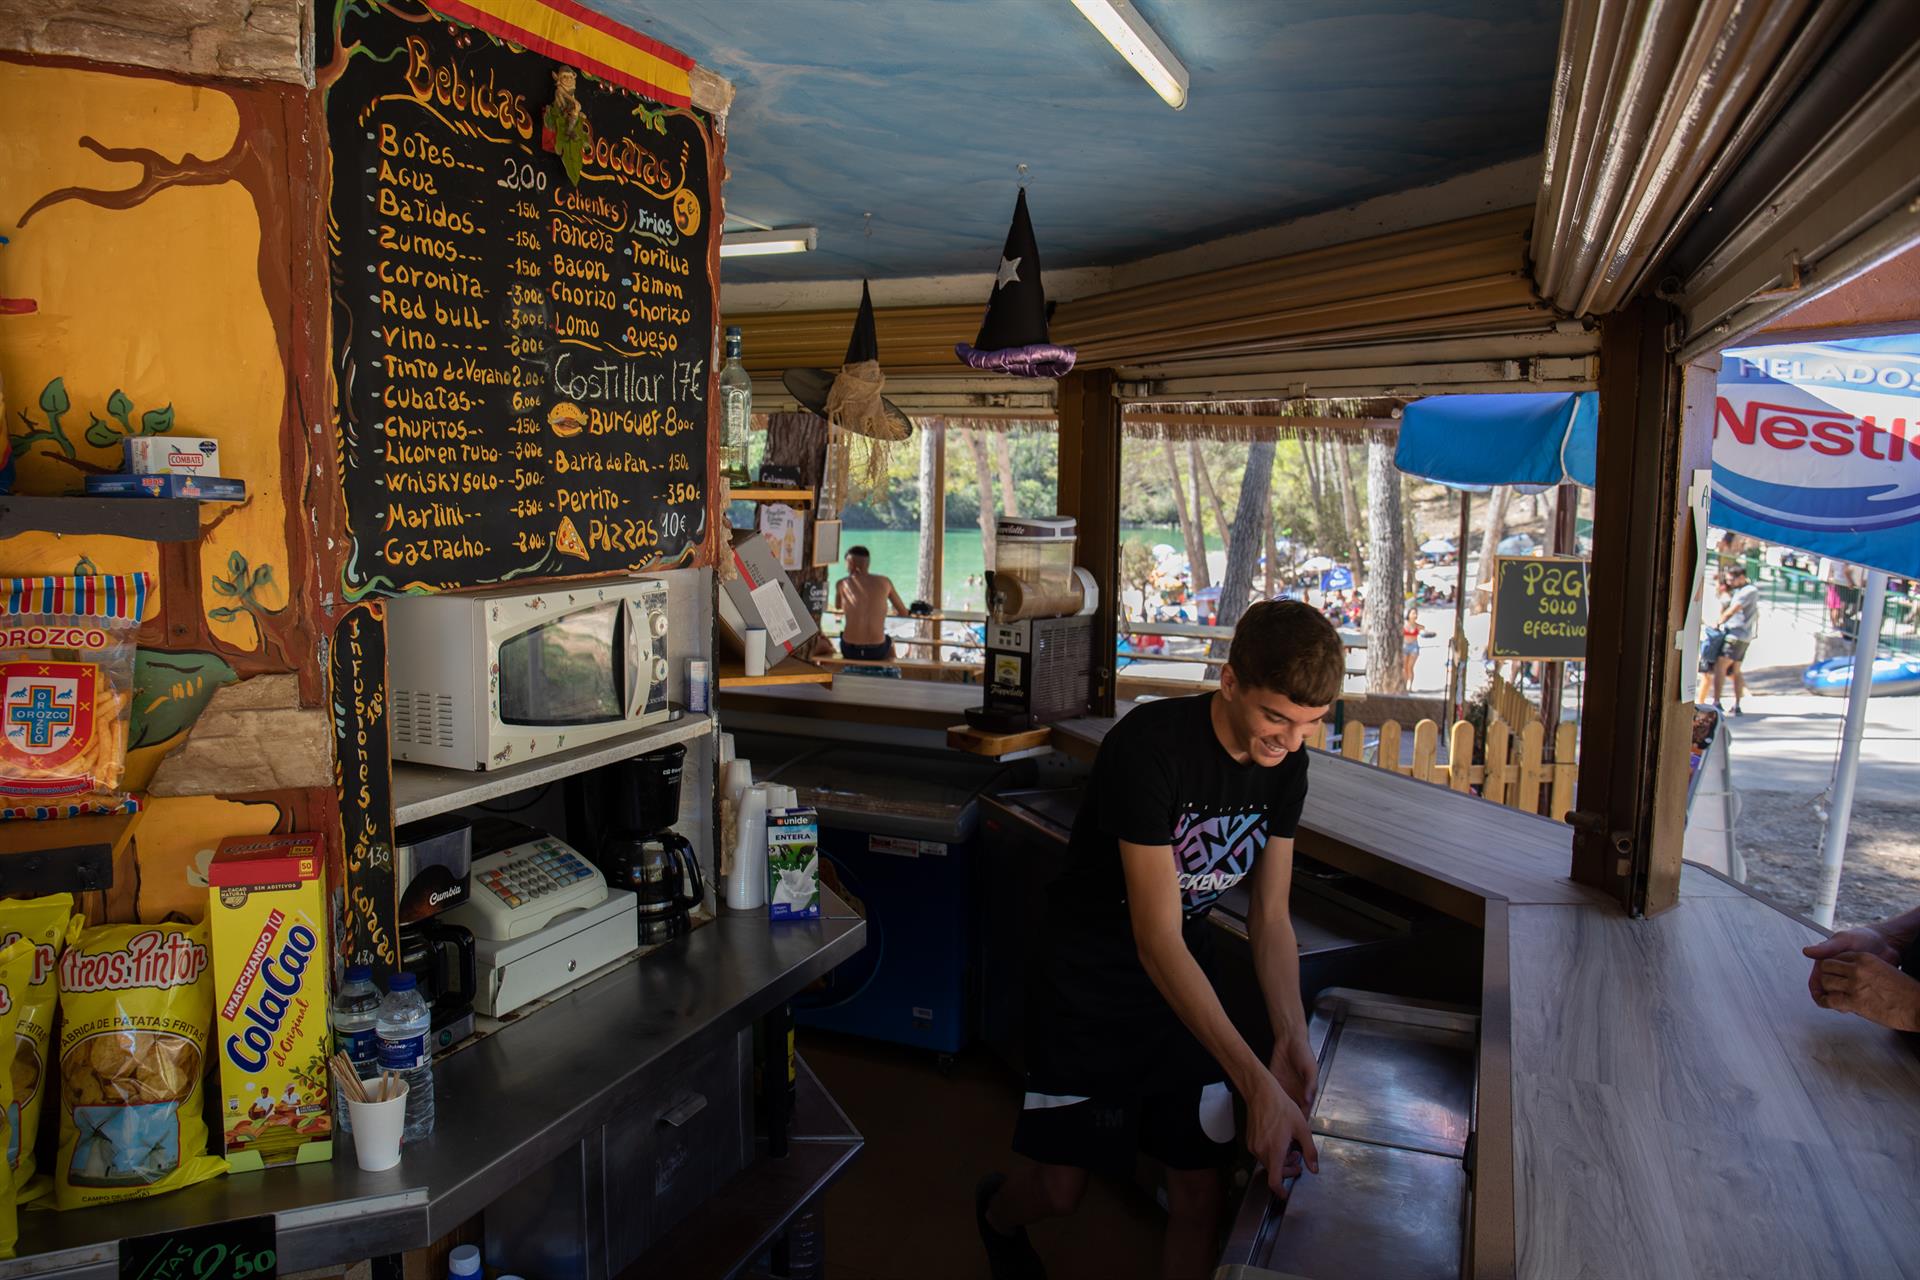 Un camarero trabajando en el kiosko de comida y bebida del embalse de Bolarque, a 20 de agosto, en Guadalajara, Castilla La-Mancha, (España). - Rafael Bastante - Europa Press - Archivo